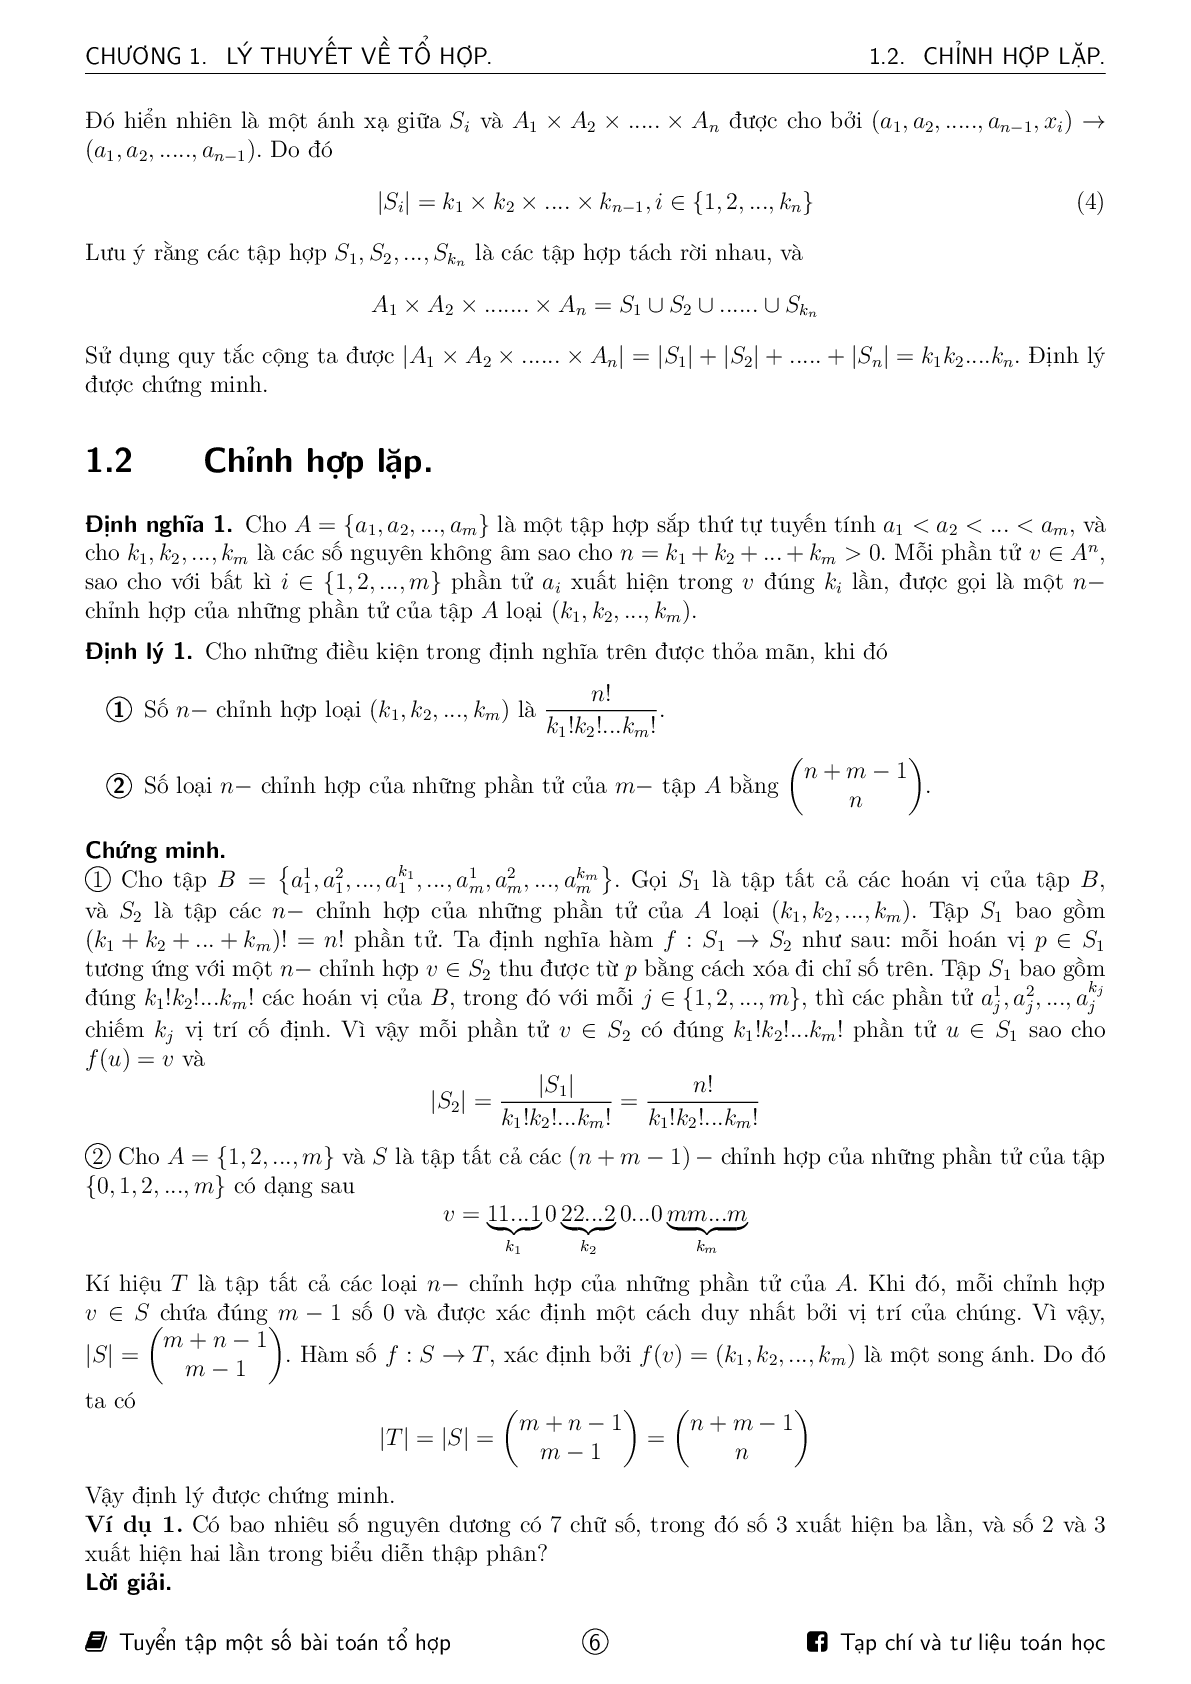 Tuyển tập một số bài toán tổ hợp ôn thi HSG Toán (trang 6)